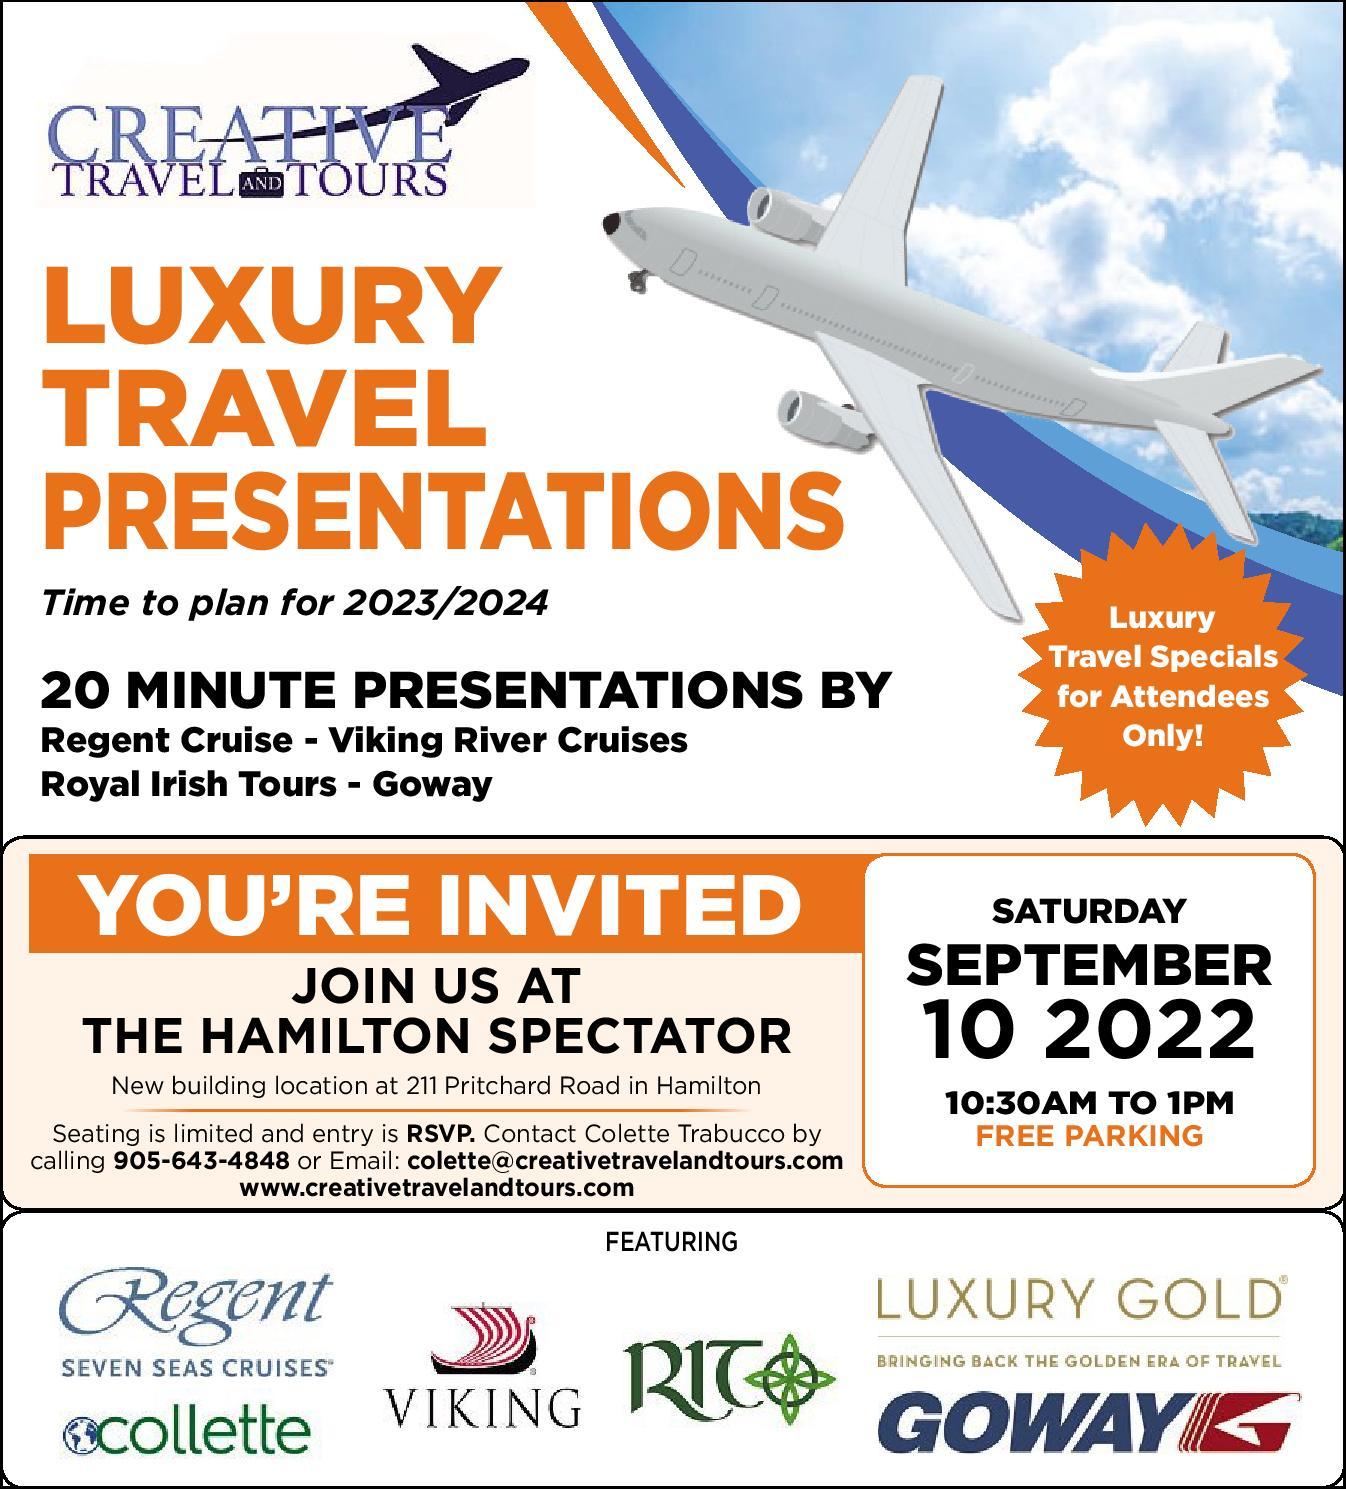 Luxury Travel Presentation - background banner